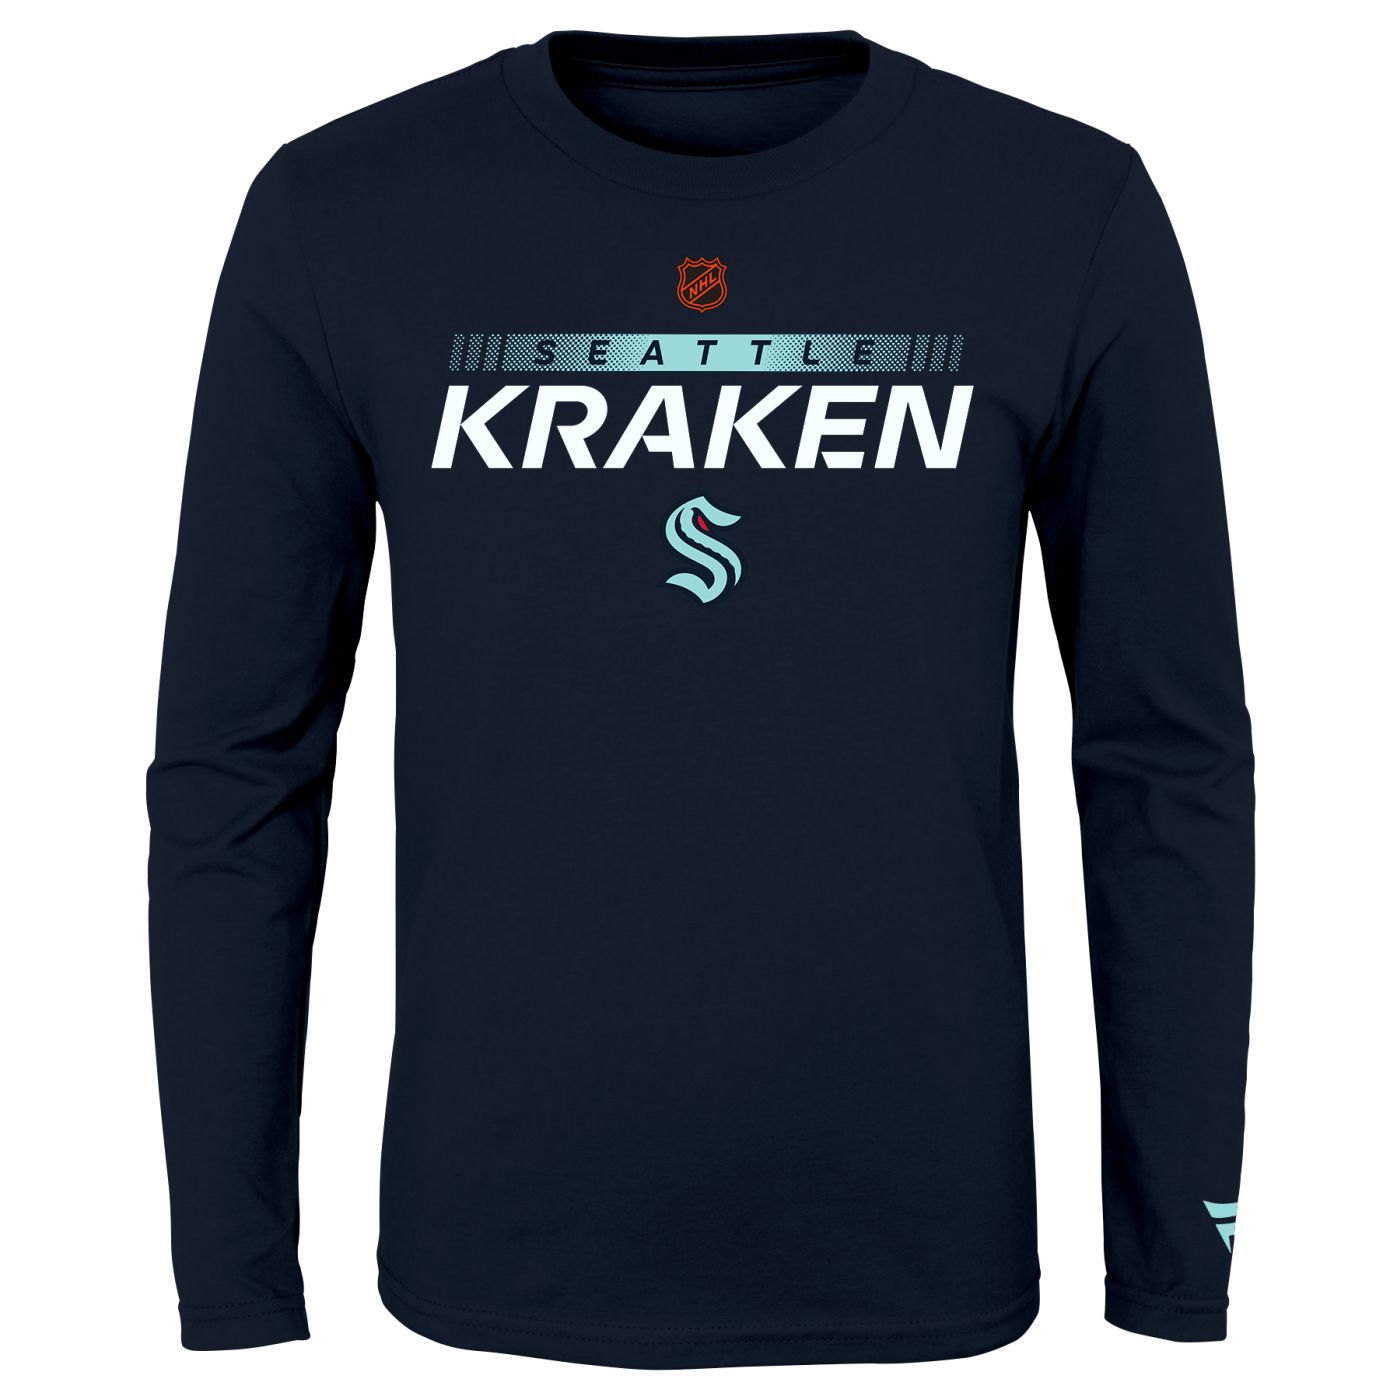 Release the Kraken Shirt